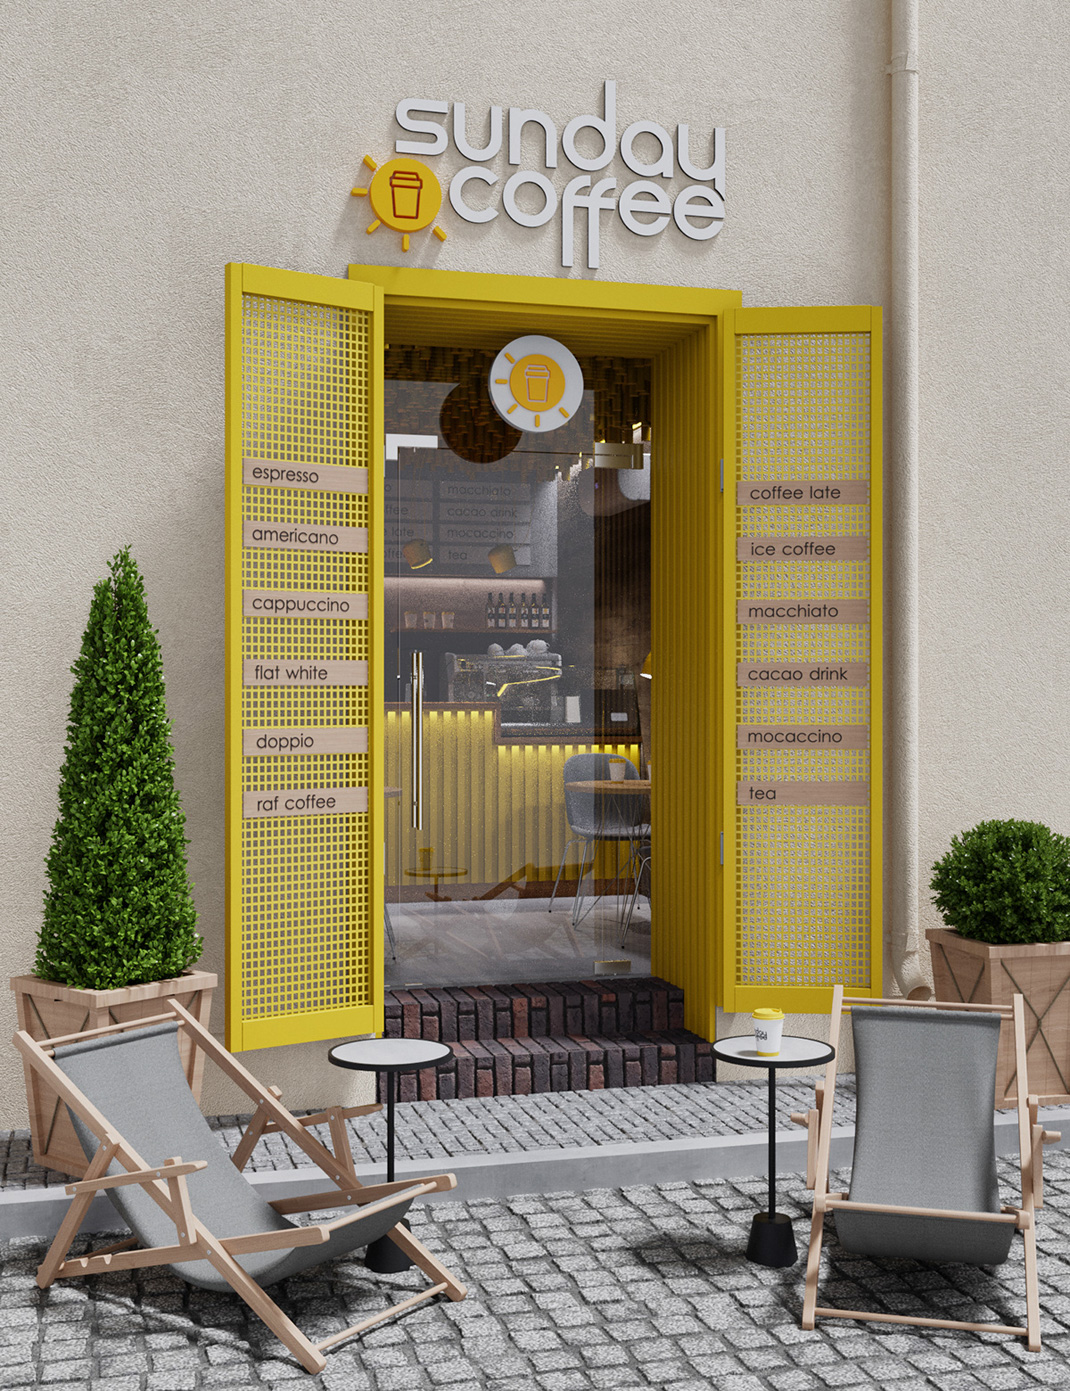 星期日咖啡馆 乌克兰 咖啡馆 黄色 logo设计 vi设计 空间设计